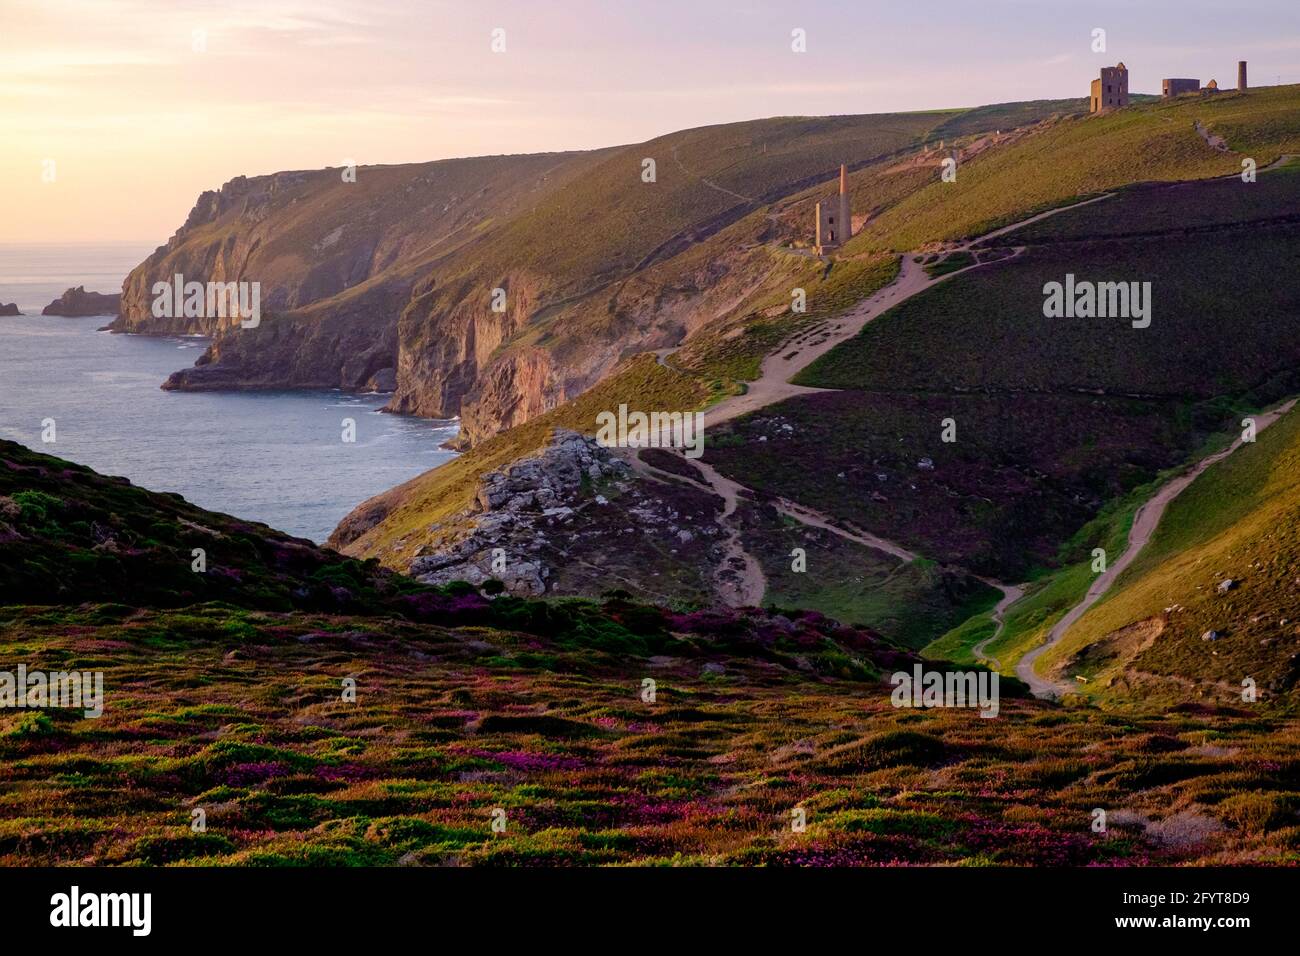 Coastal scenery near Chapel Porth, Cornwall, England Stock Photo